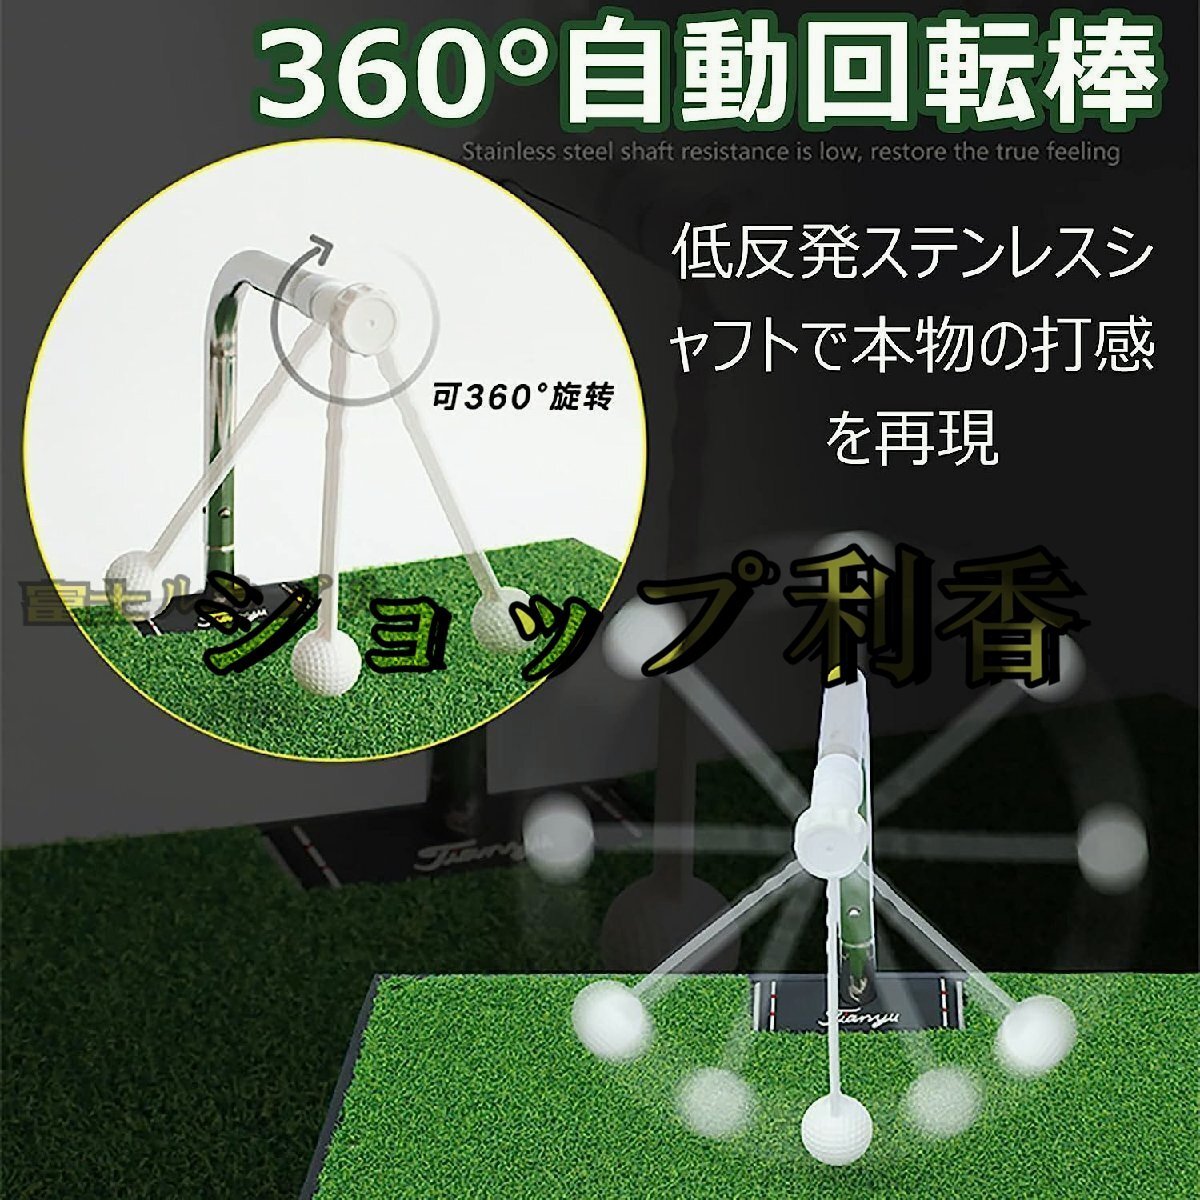 ゴルフ スイング練習用マット 360°回転 ポータブル 5段階高さ調整可能 トレーニングエイド テクニックを磨き 家庭用 ゴルフクラブ練習_画像4